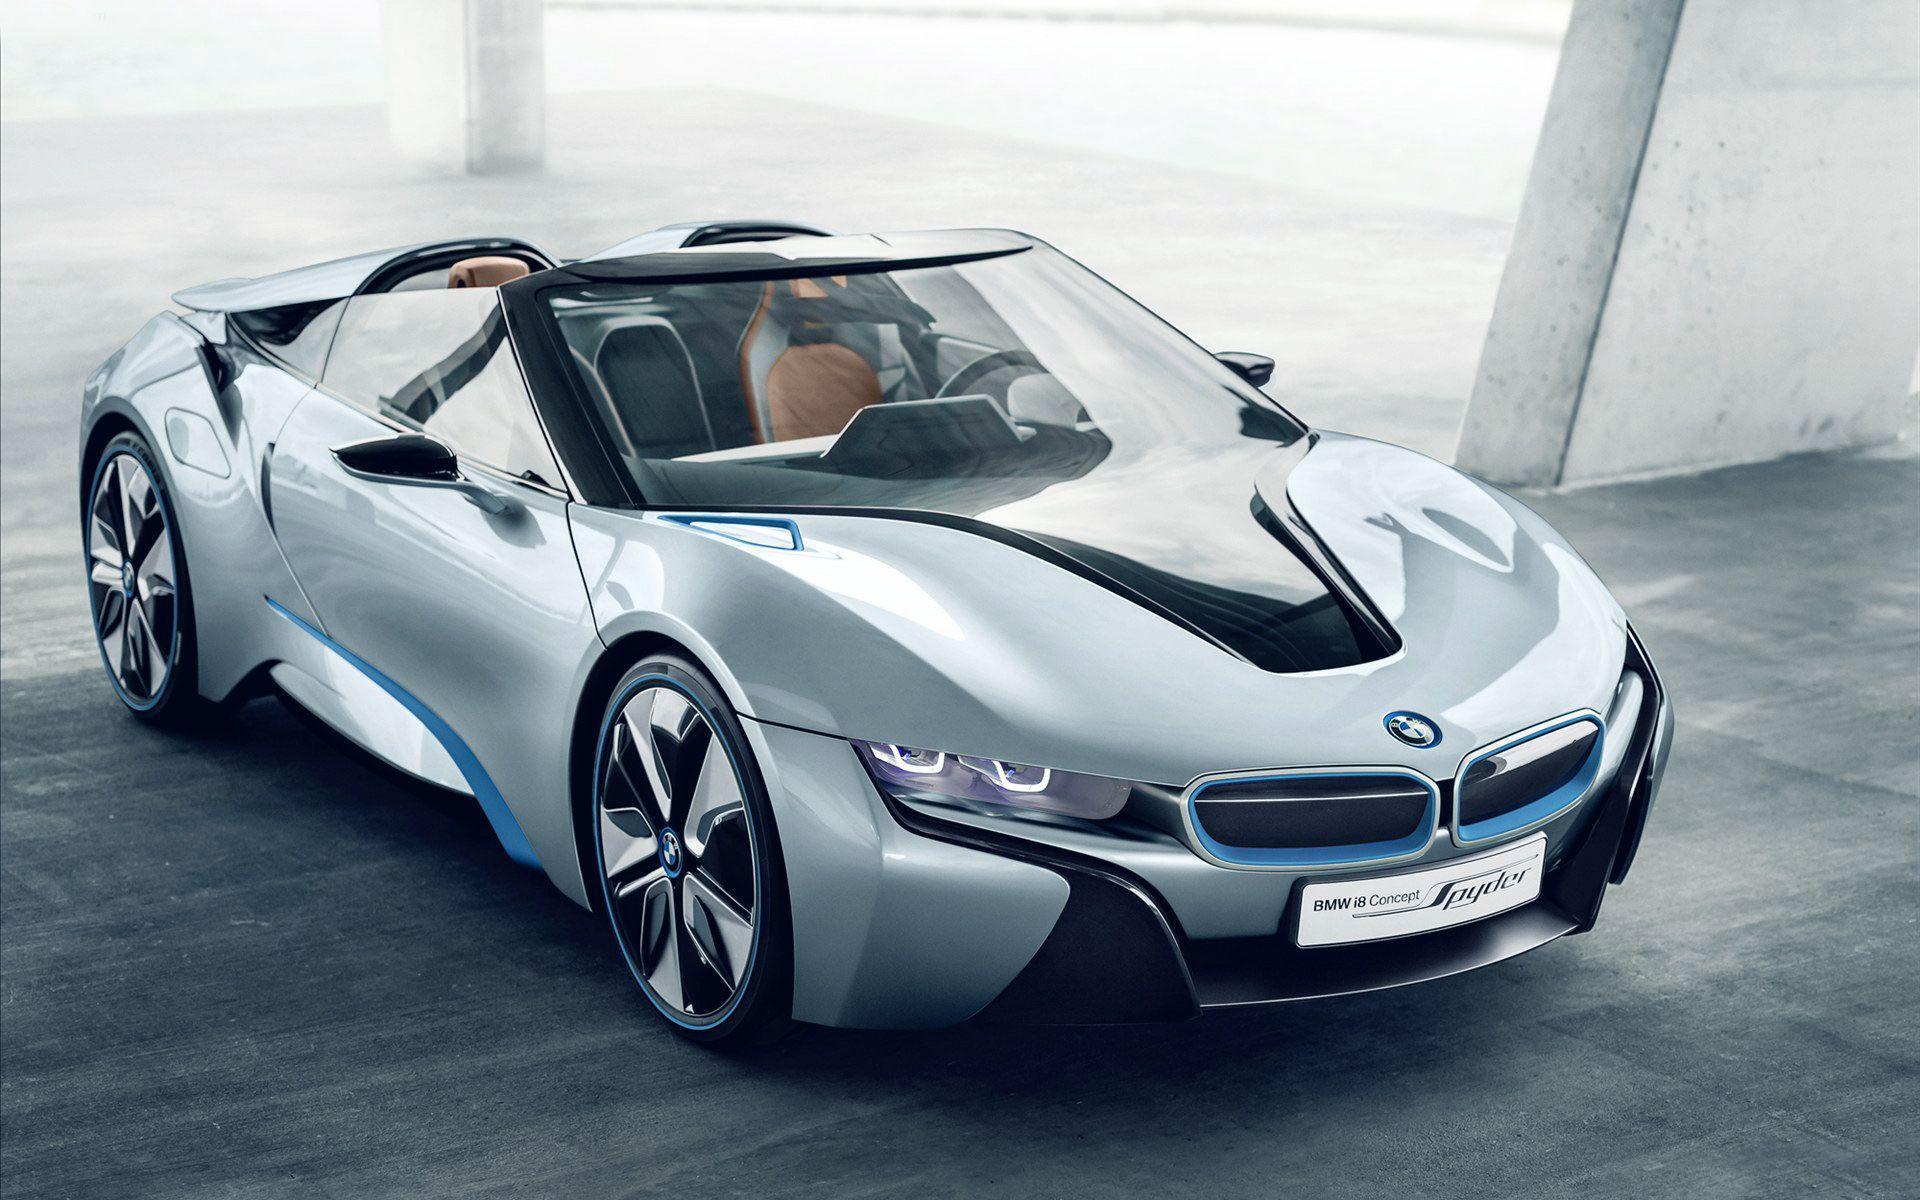 BMW i8 hd wallpaper download 2022